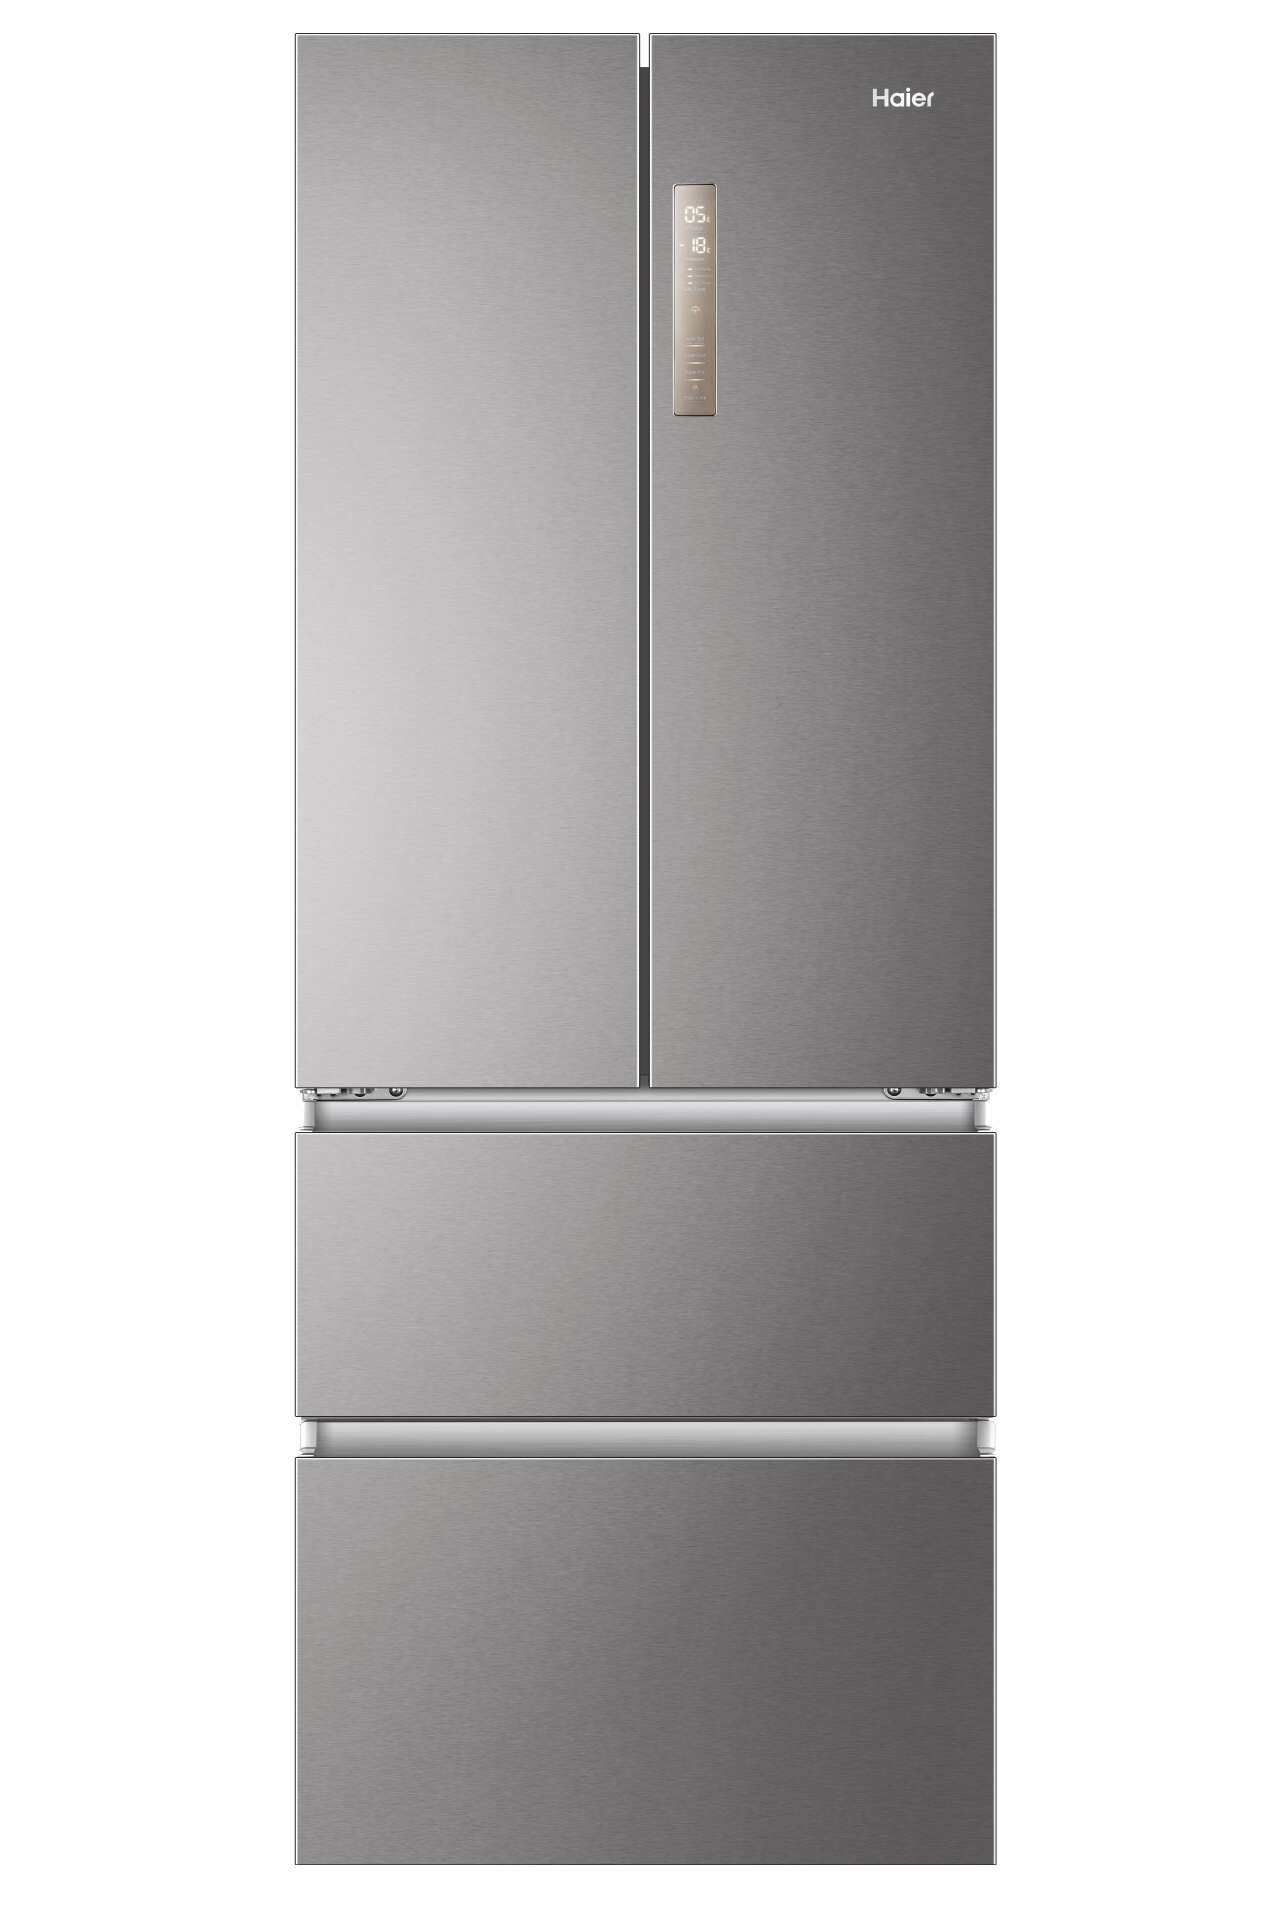 Haier hb17fpaaa négyajtós hűtőszekrény (306 + 140 liter)